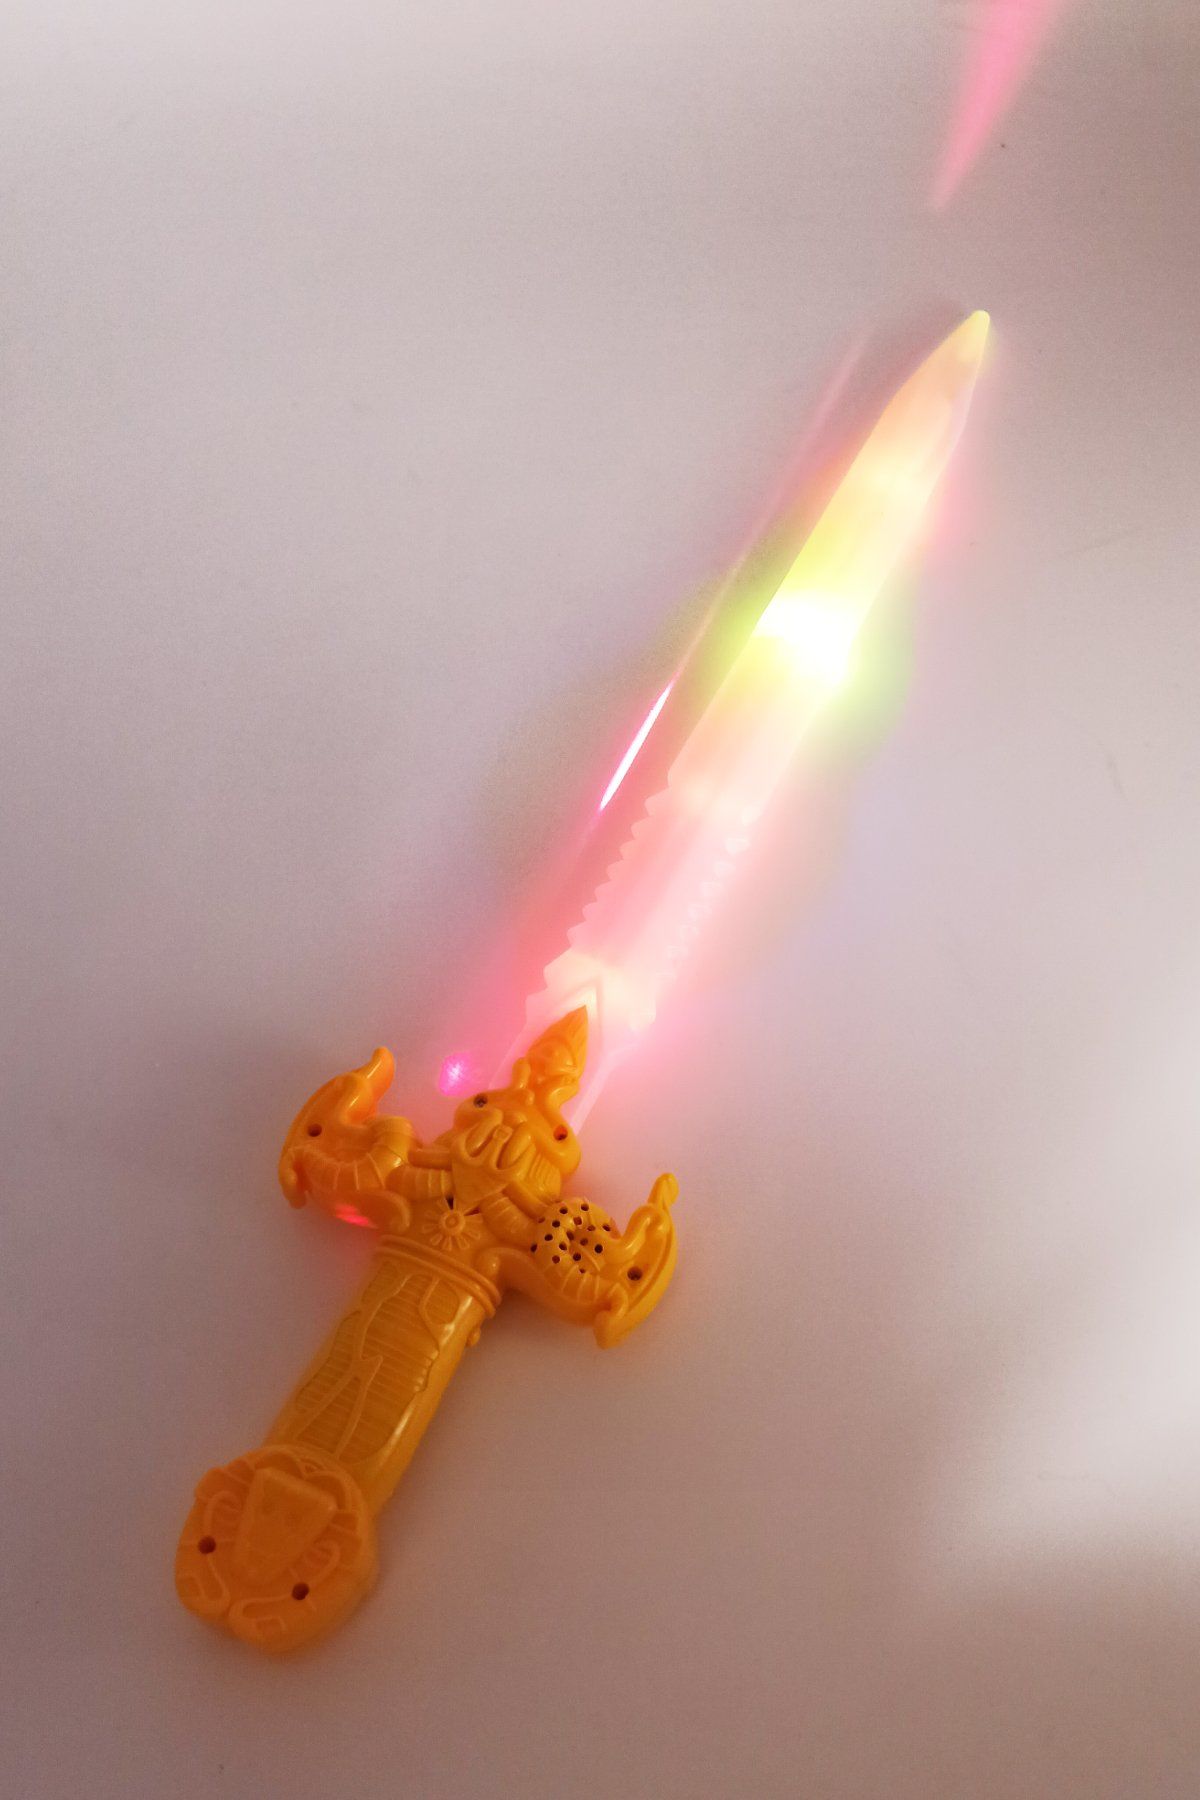 Sesli Işıklı ve Lazerli Gerçekçi Oyuncak Samuray Kılıcı 56 cm Boyunda Sarı